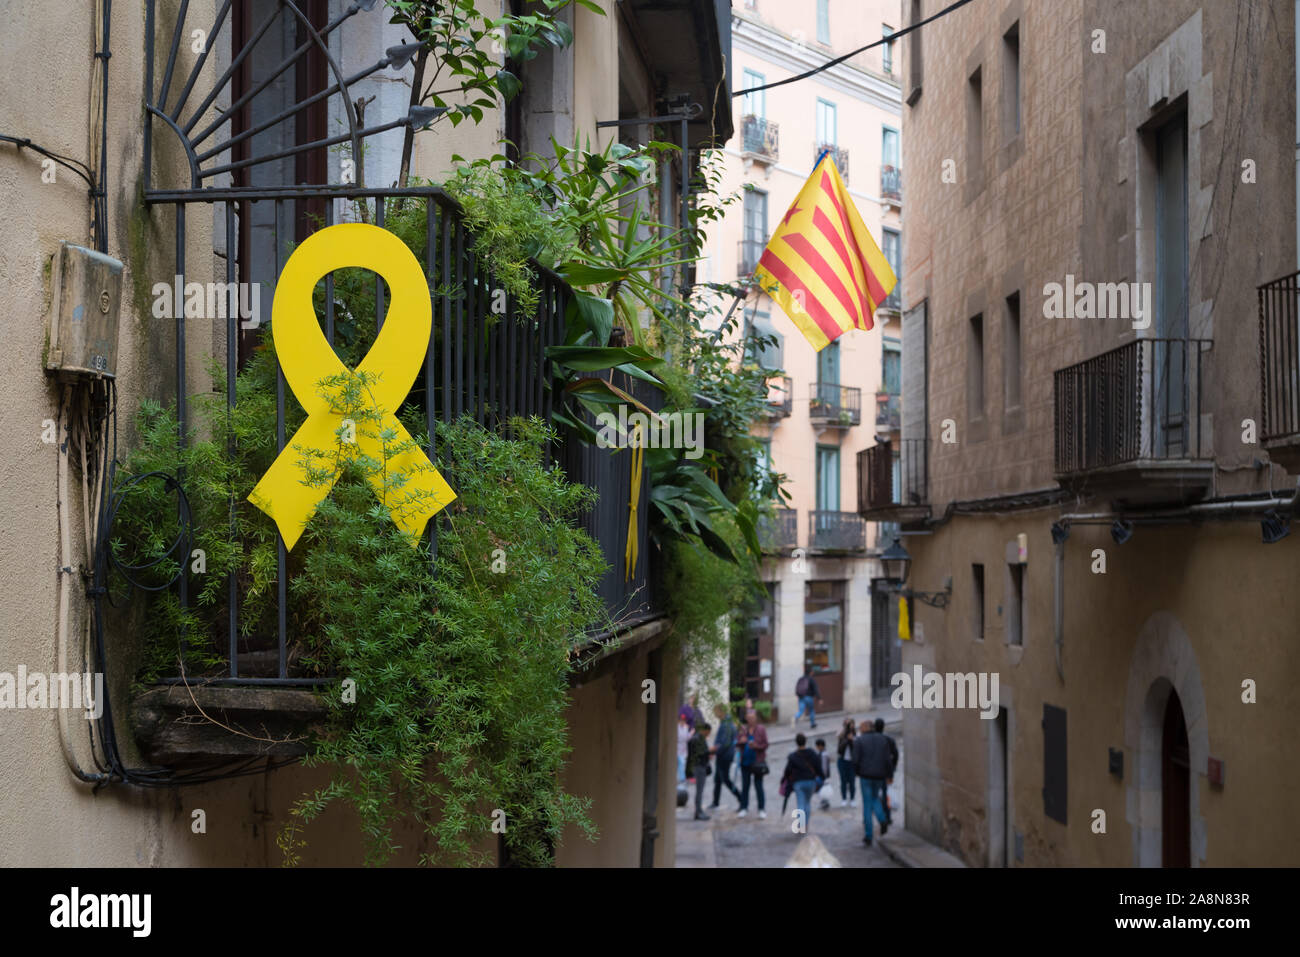 Fassaden und Häuser in Katalonien, Spanien, mit unabhängigkeitsfahnen und gelben Bändern verziert Stockfoto